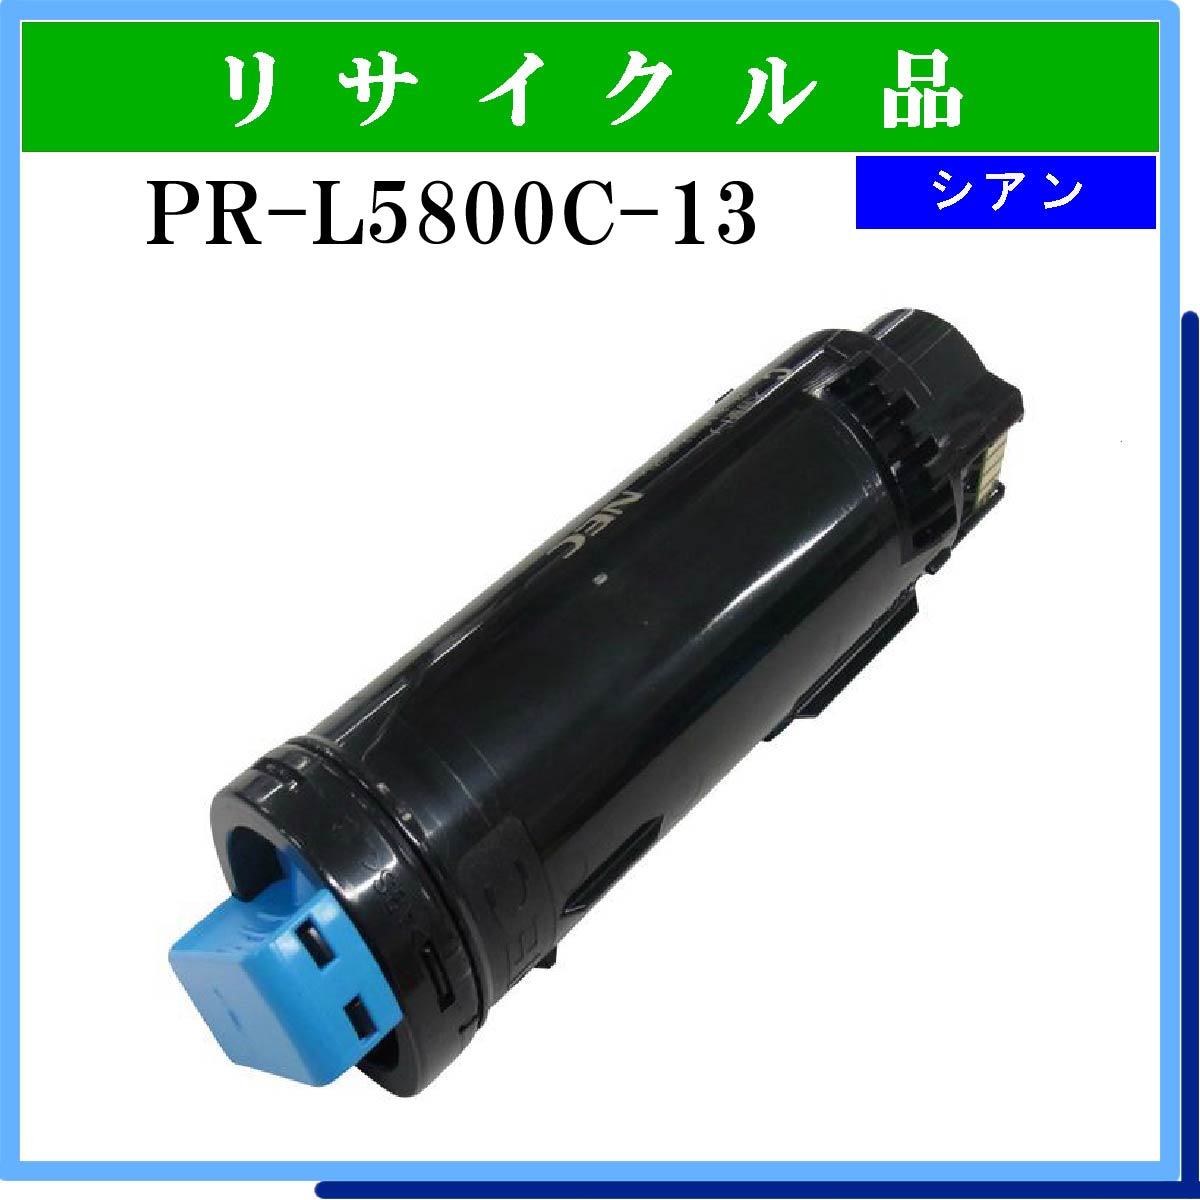 PR-L5800C-13